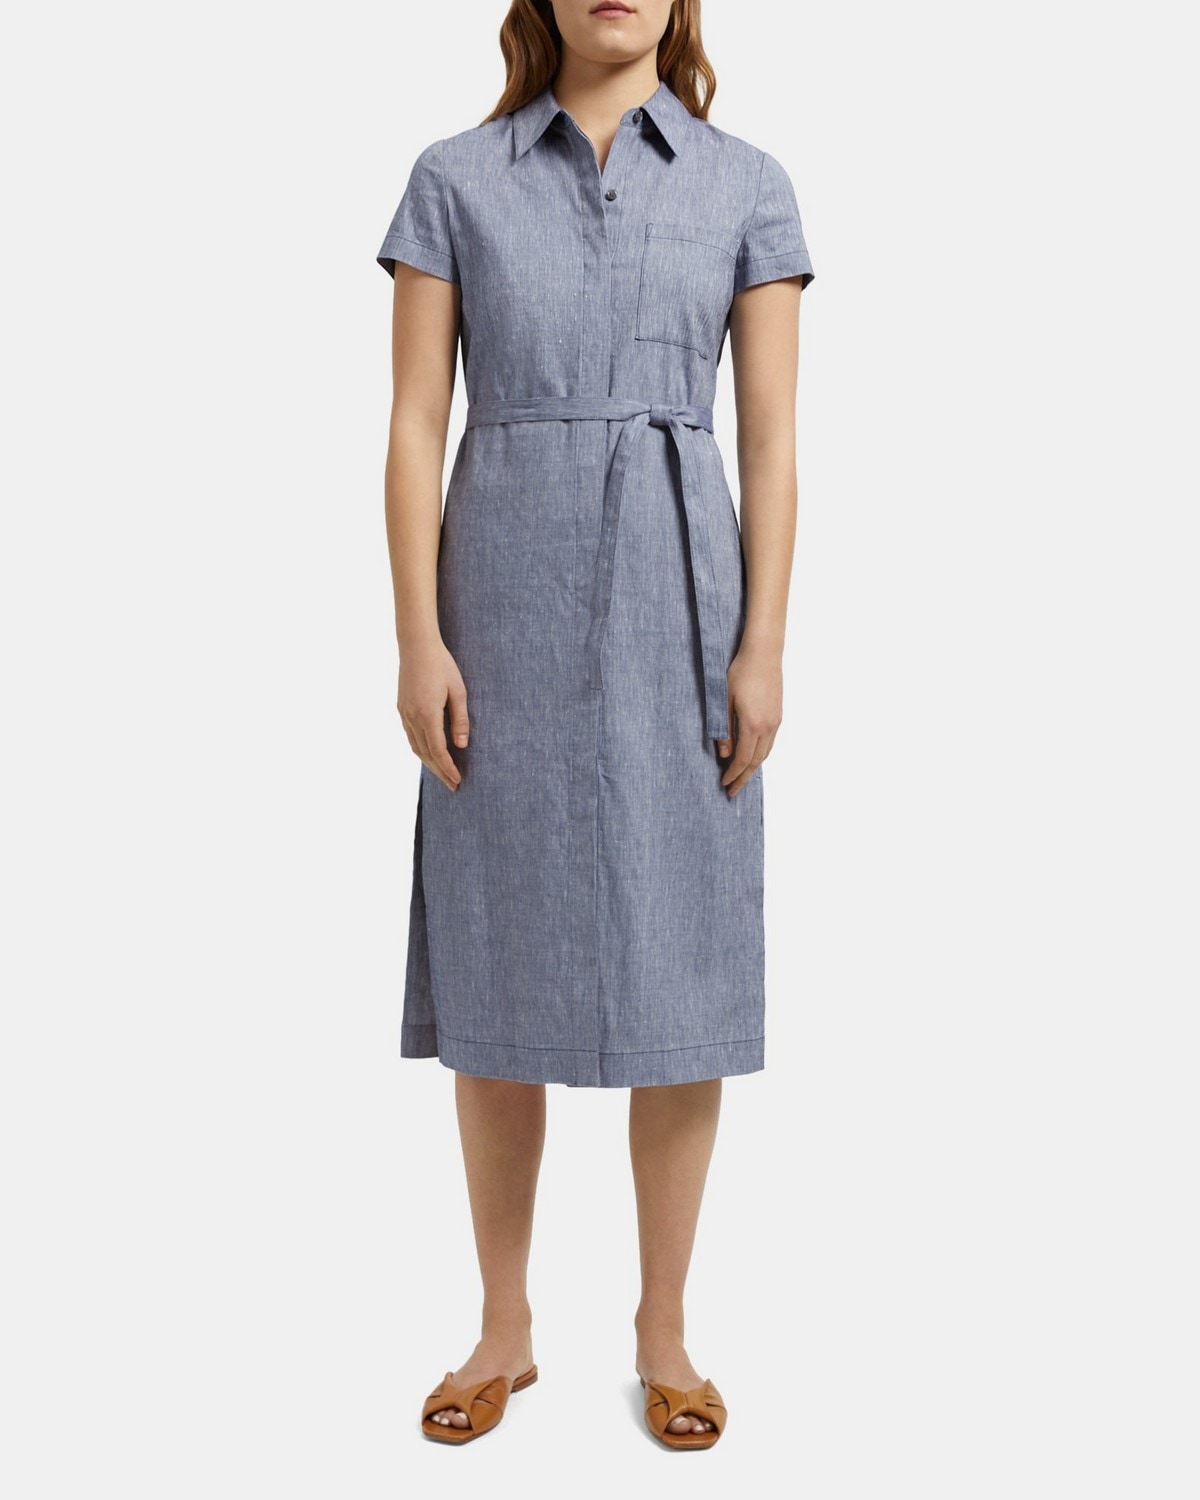 Theory Short-Sleeve Shirt Dress in Linen Blend Melange